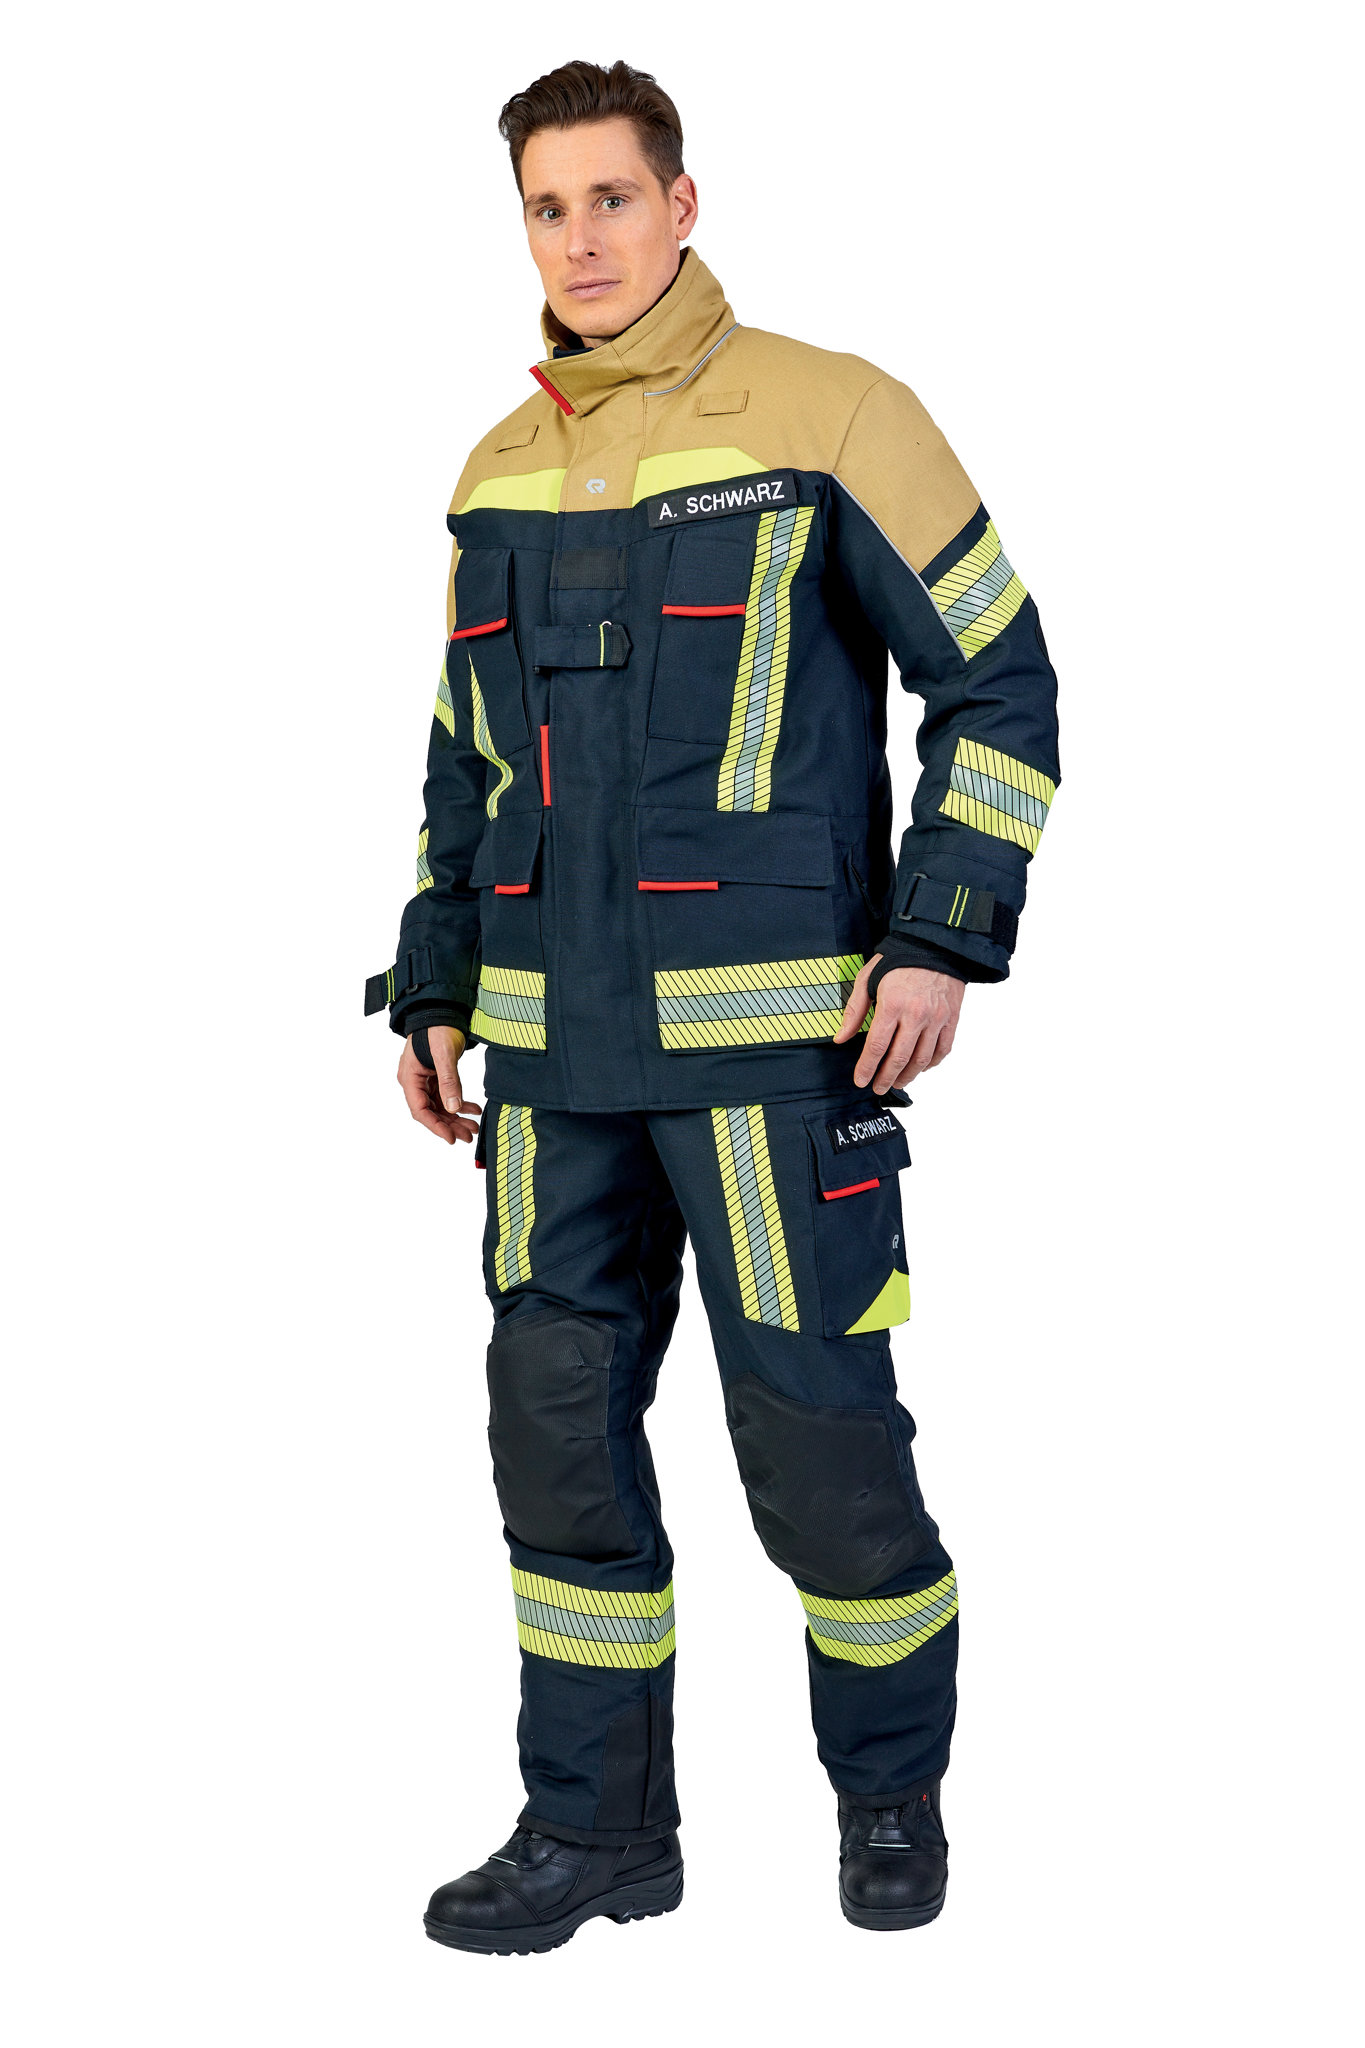 Bild von ROSENBAUER Feuerwehreinsatzjacke FIRE FLEX, NOMEX NXT, schwarzblau/gold, Gr. 40-42 B